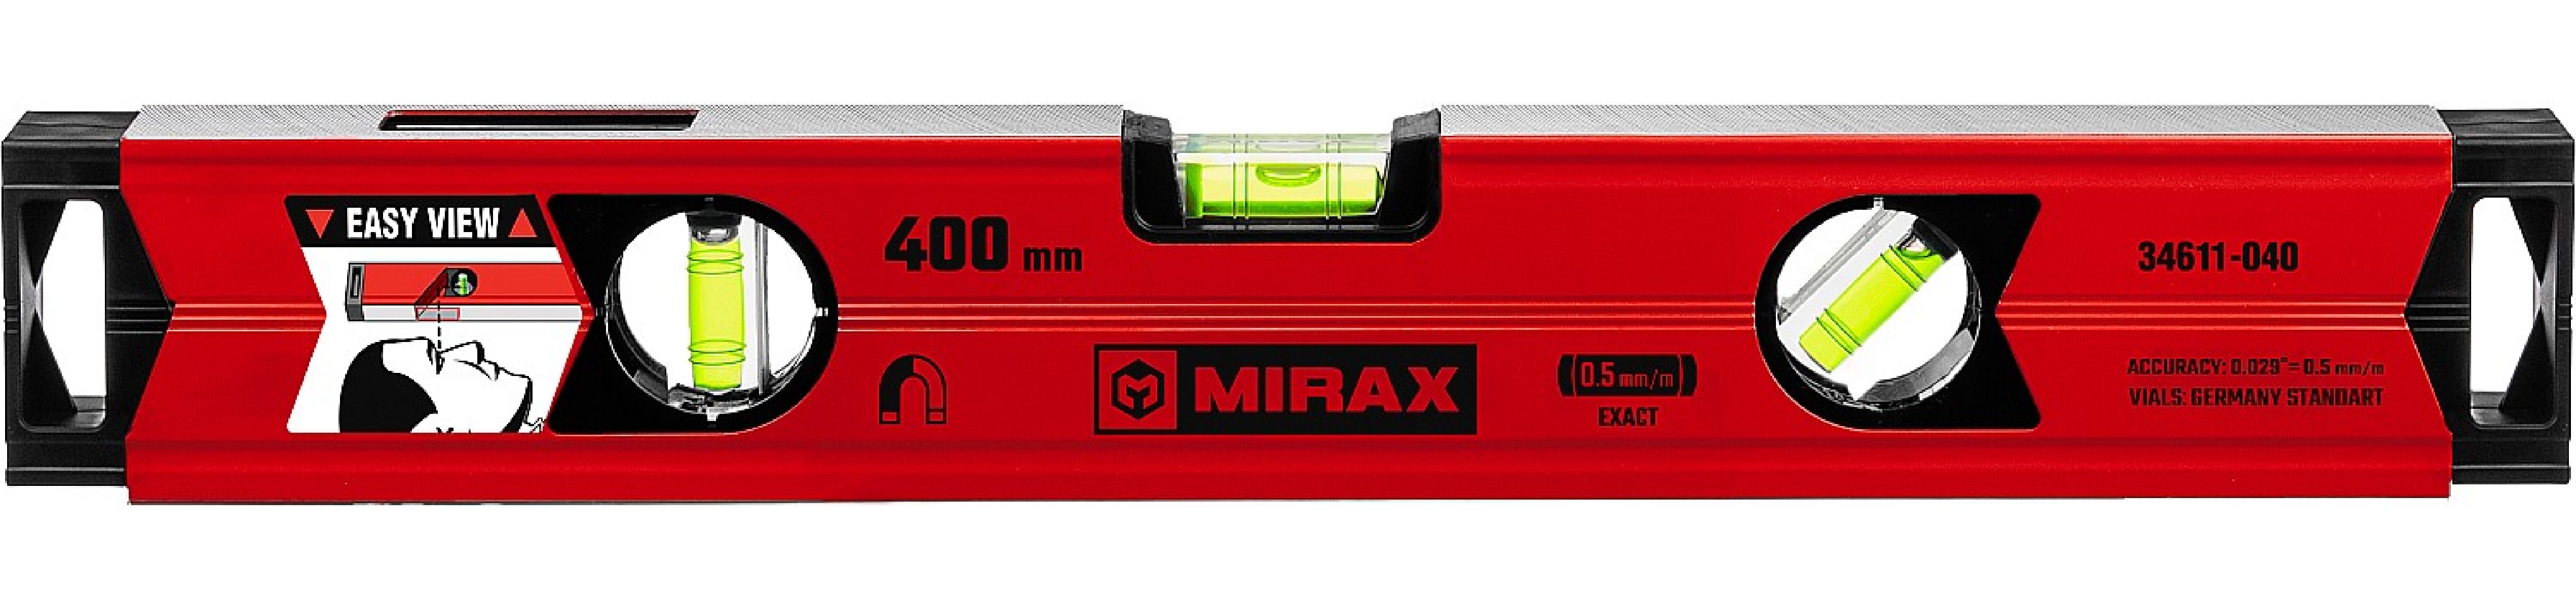    MIRAX 400  (34611-040)